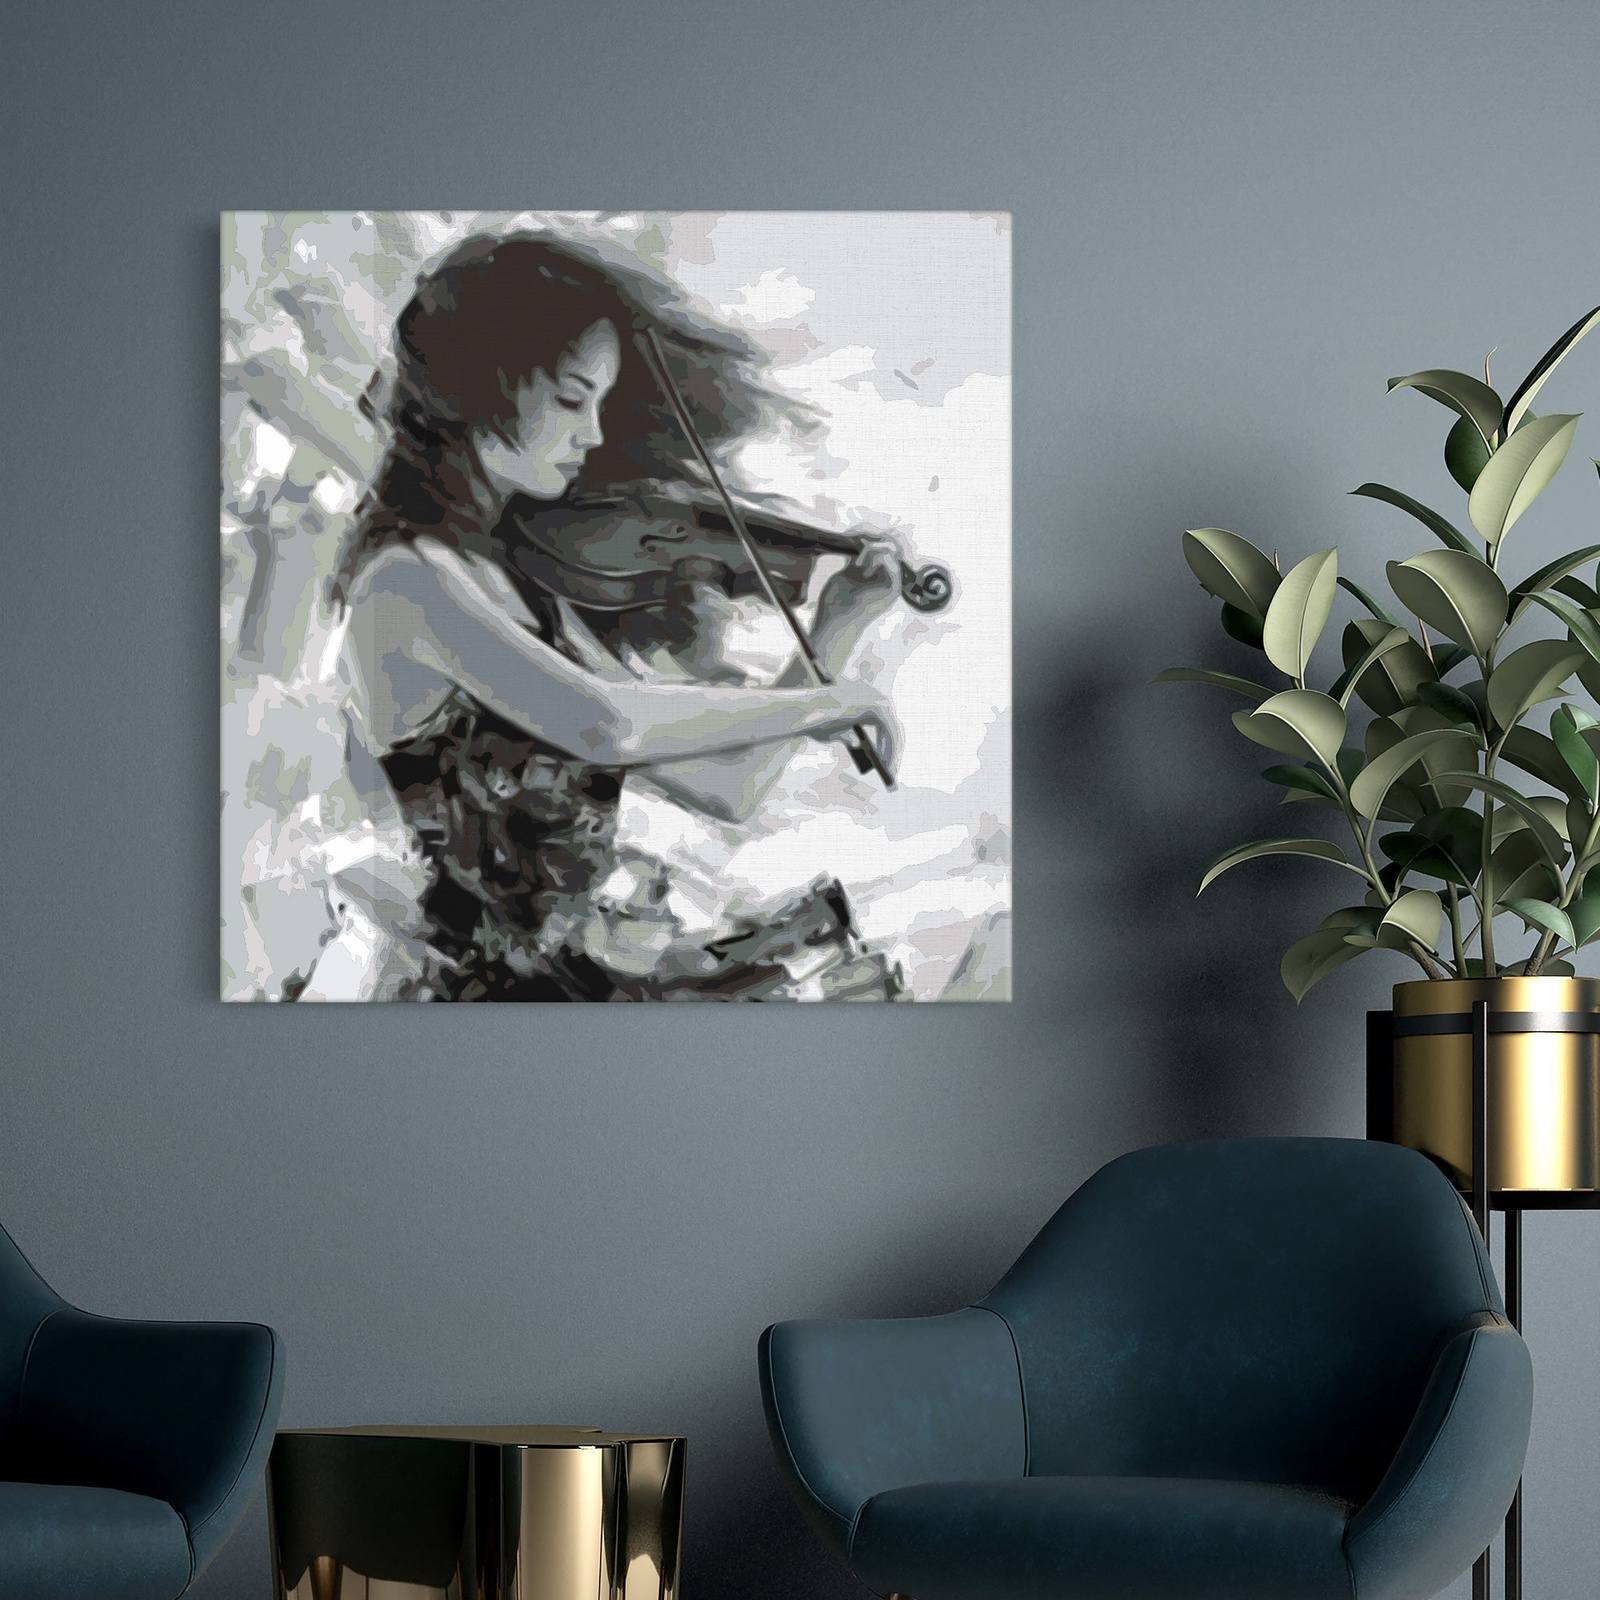 Žena hrající na housle (CH0789)